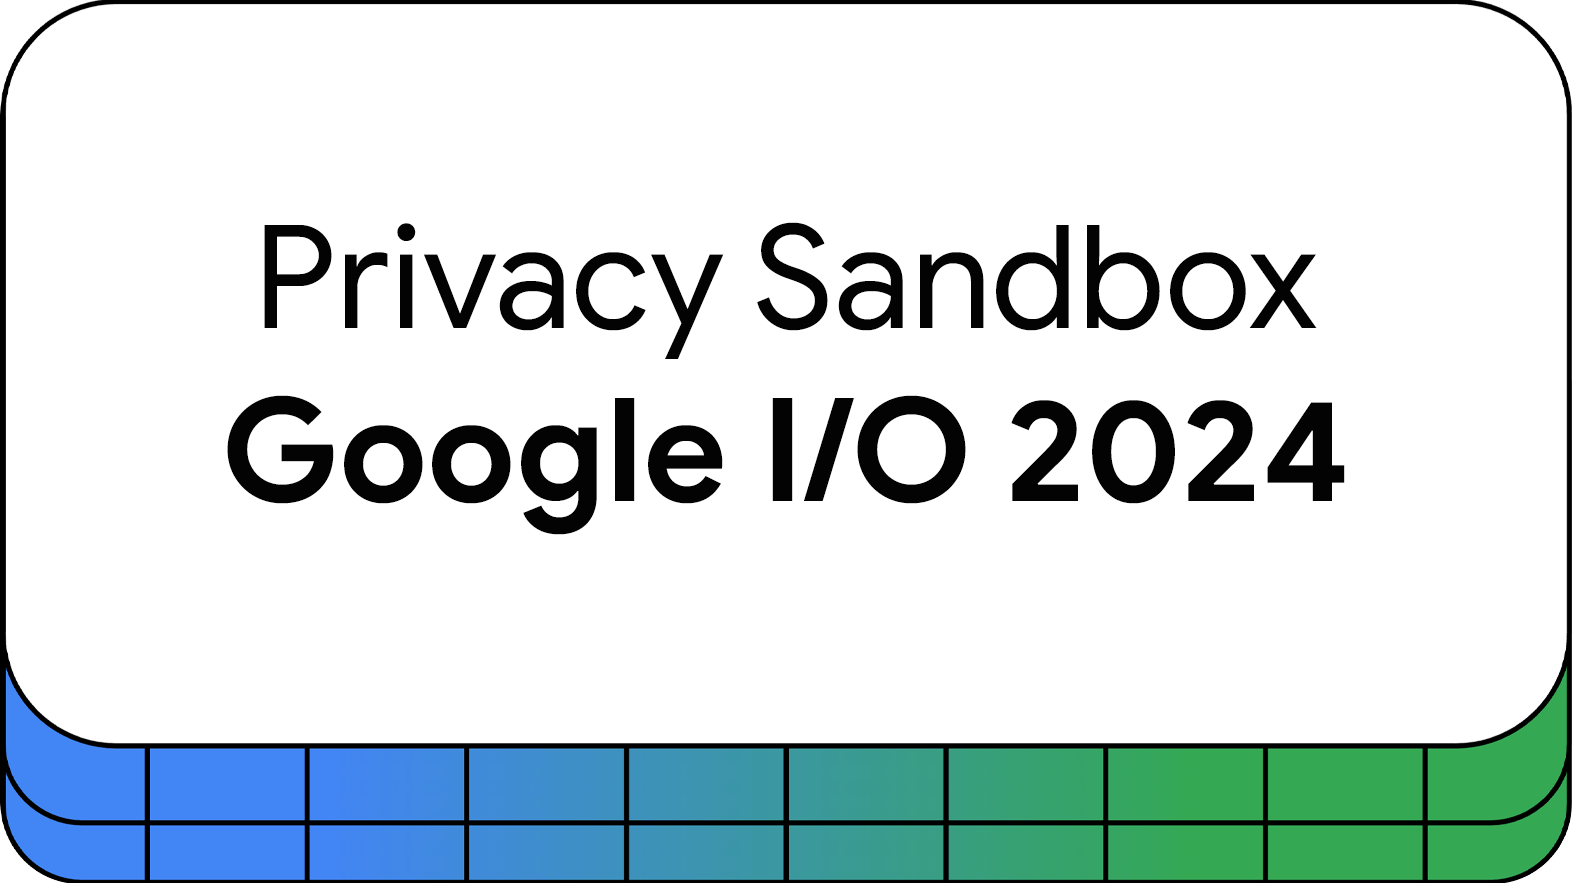 Privacy Sandbox at Google I/O 2024